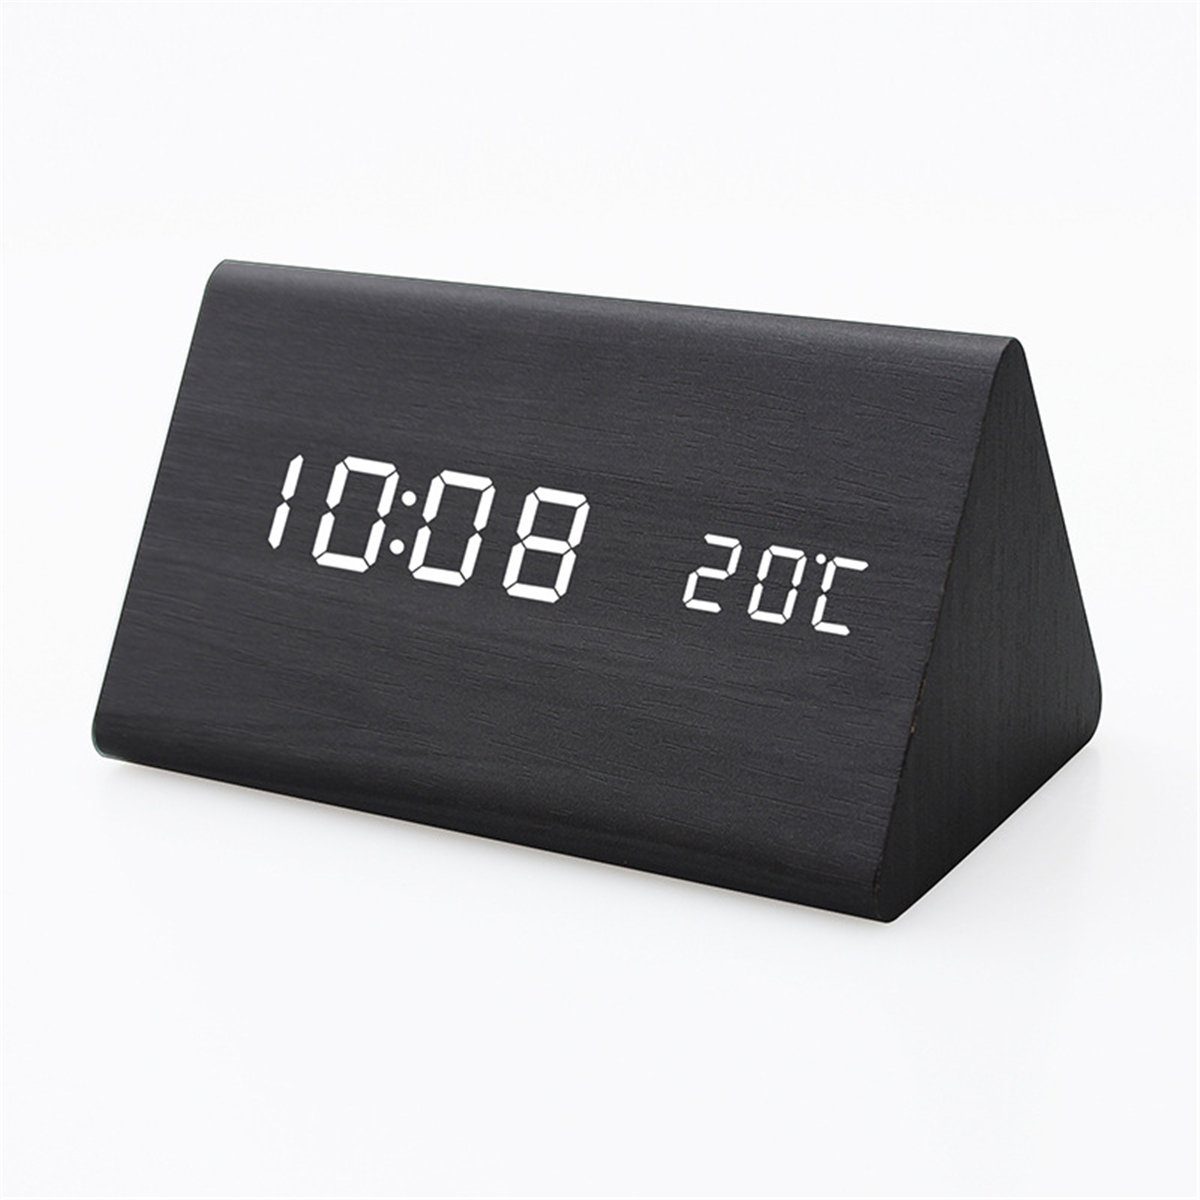 K&B Wecker Zeitanzeige aus Holz mit elektronischer LED (schwarz)